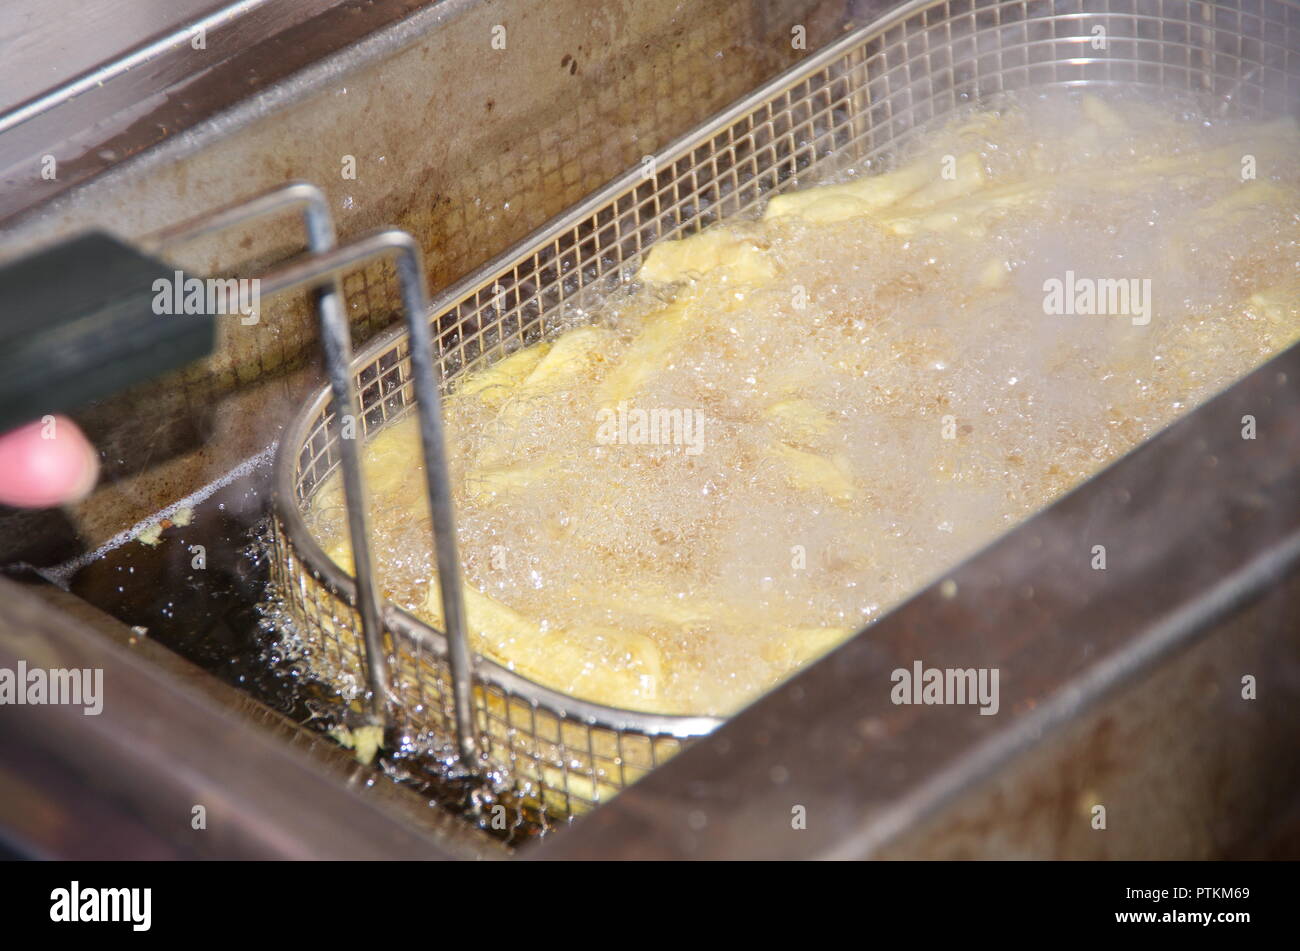 Frittieren von patatine fritte und pommes frites in einer sprudelnden und schmutzigen Fritteuse mit Metallkorb und viel Frittierfett bzw. Öl Foto Stock